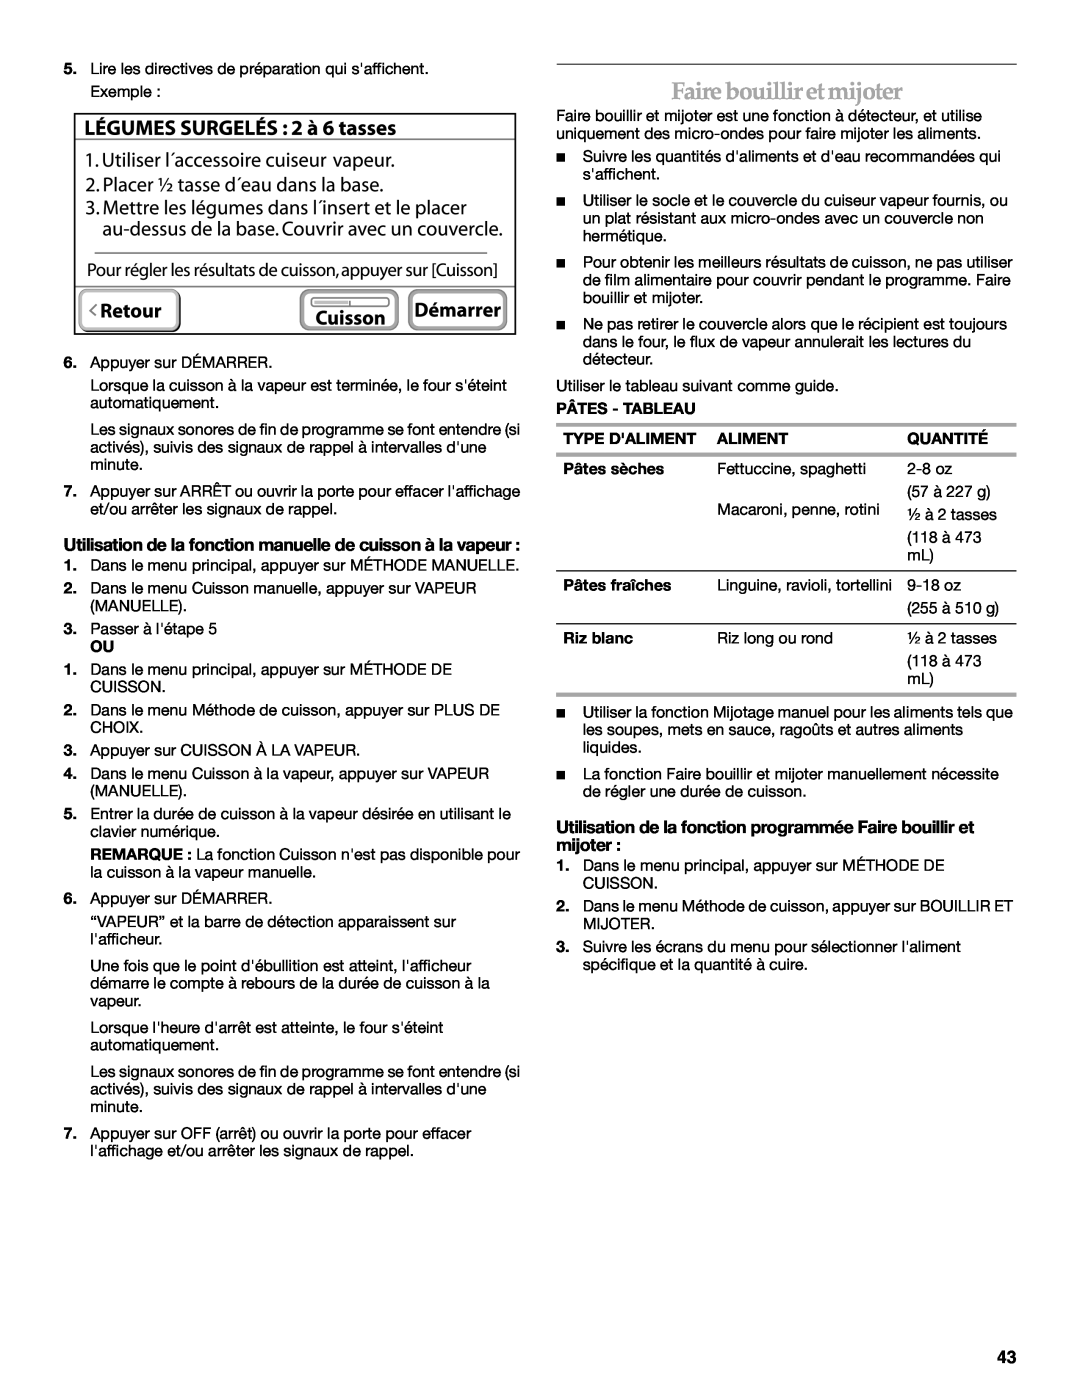 KitchenAid KEHU309 manual Utilisation de la fonction programmée Faire bouillir et mijoter 